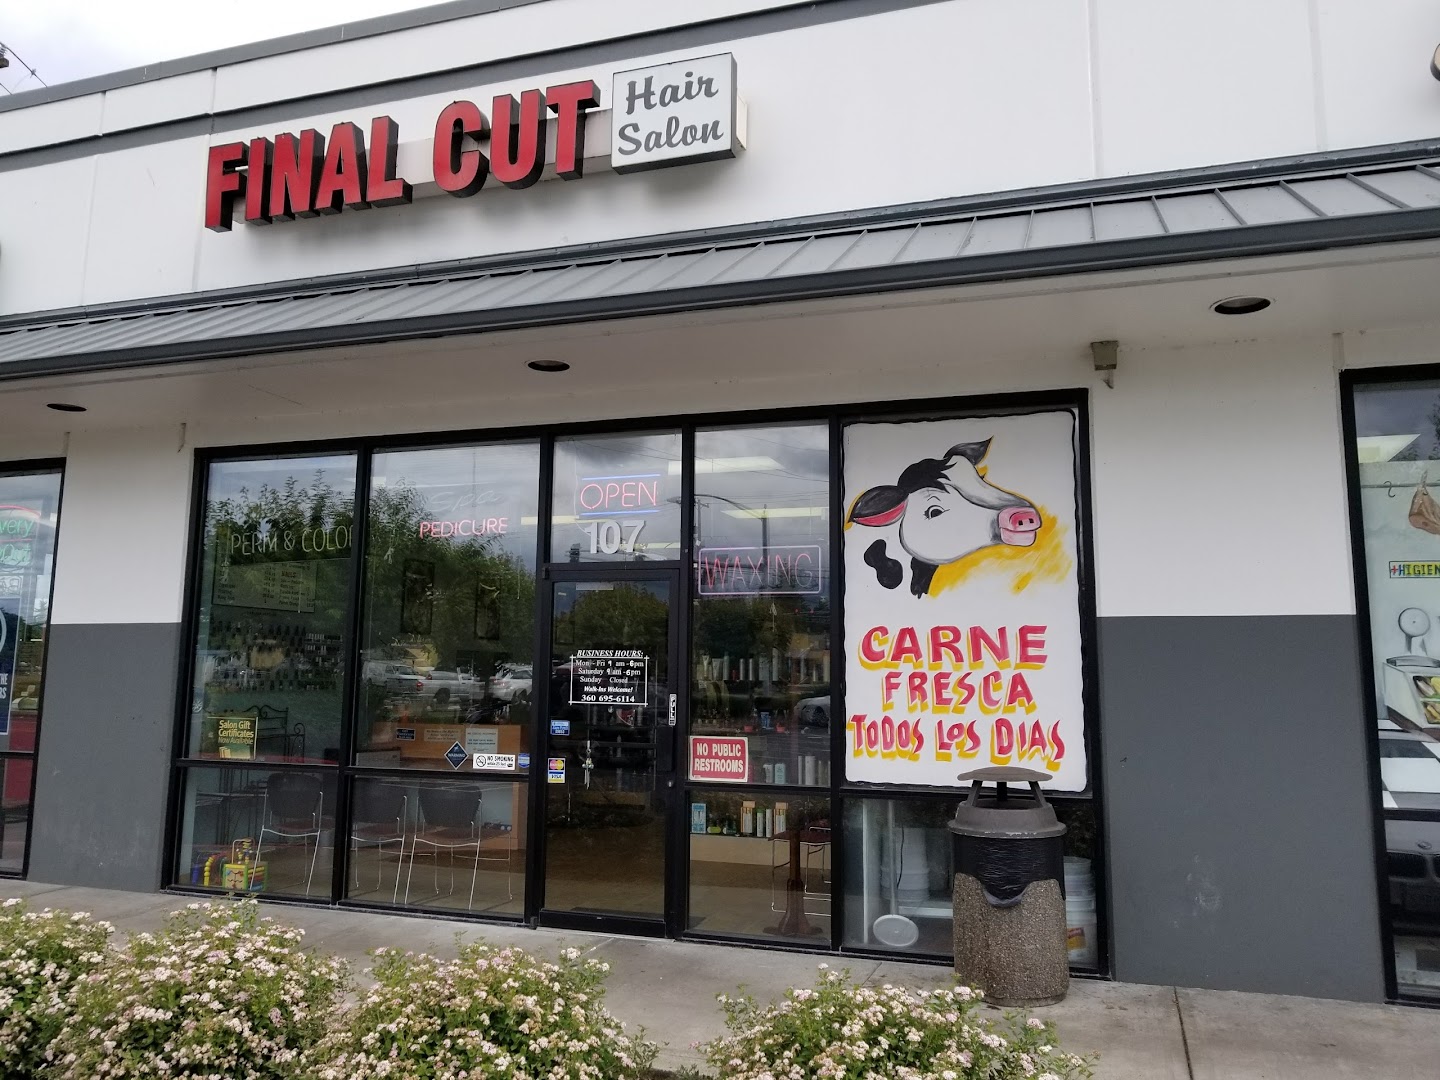 Final Cut Hair Salon